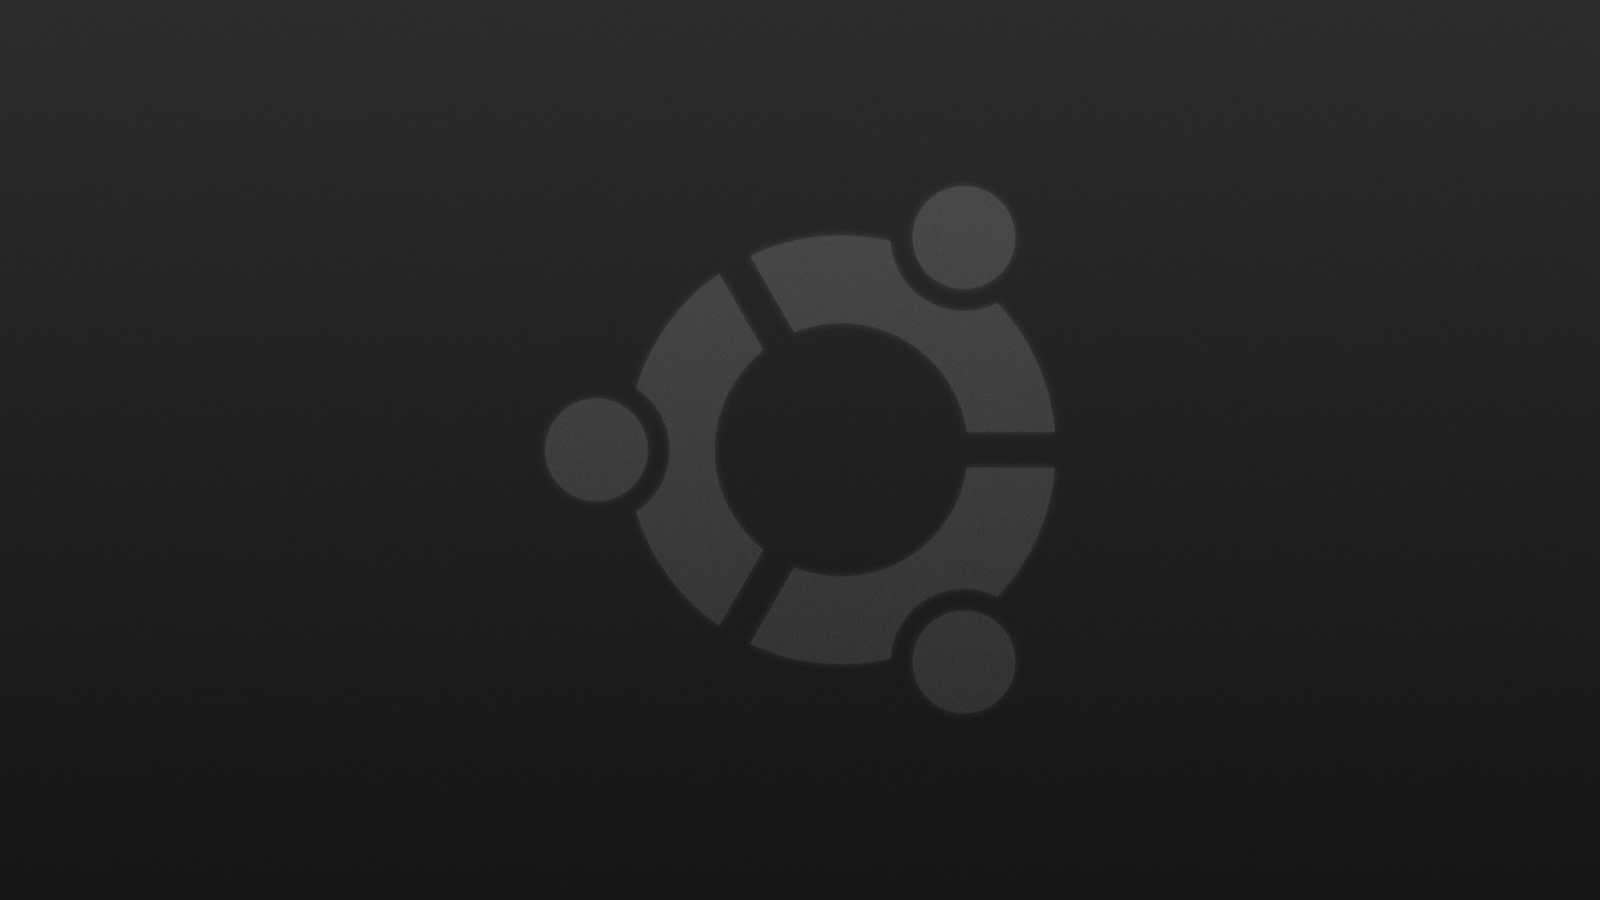 Installez XRDP sur un serveur Ubuntu avec un modèle XFCE ...